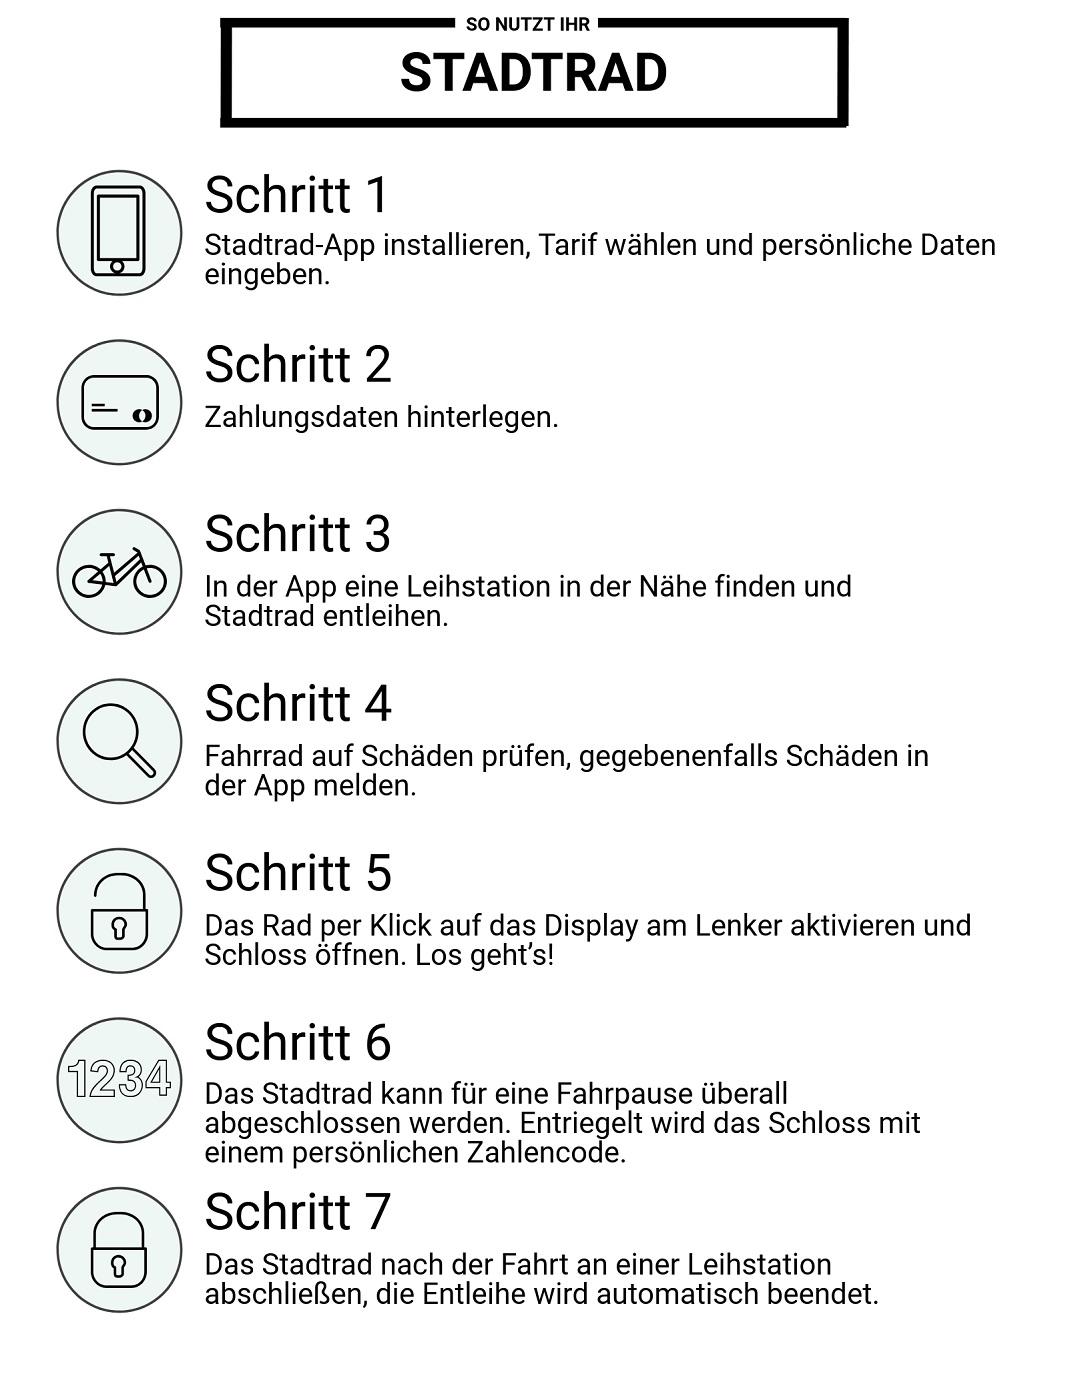 Ein Smartphone mit der Stadtrad-App zeigt die Fehlermeldung an: "Anmietung aktuell nicht möglich."